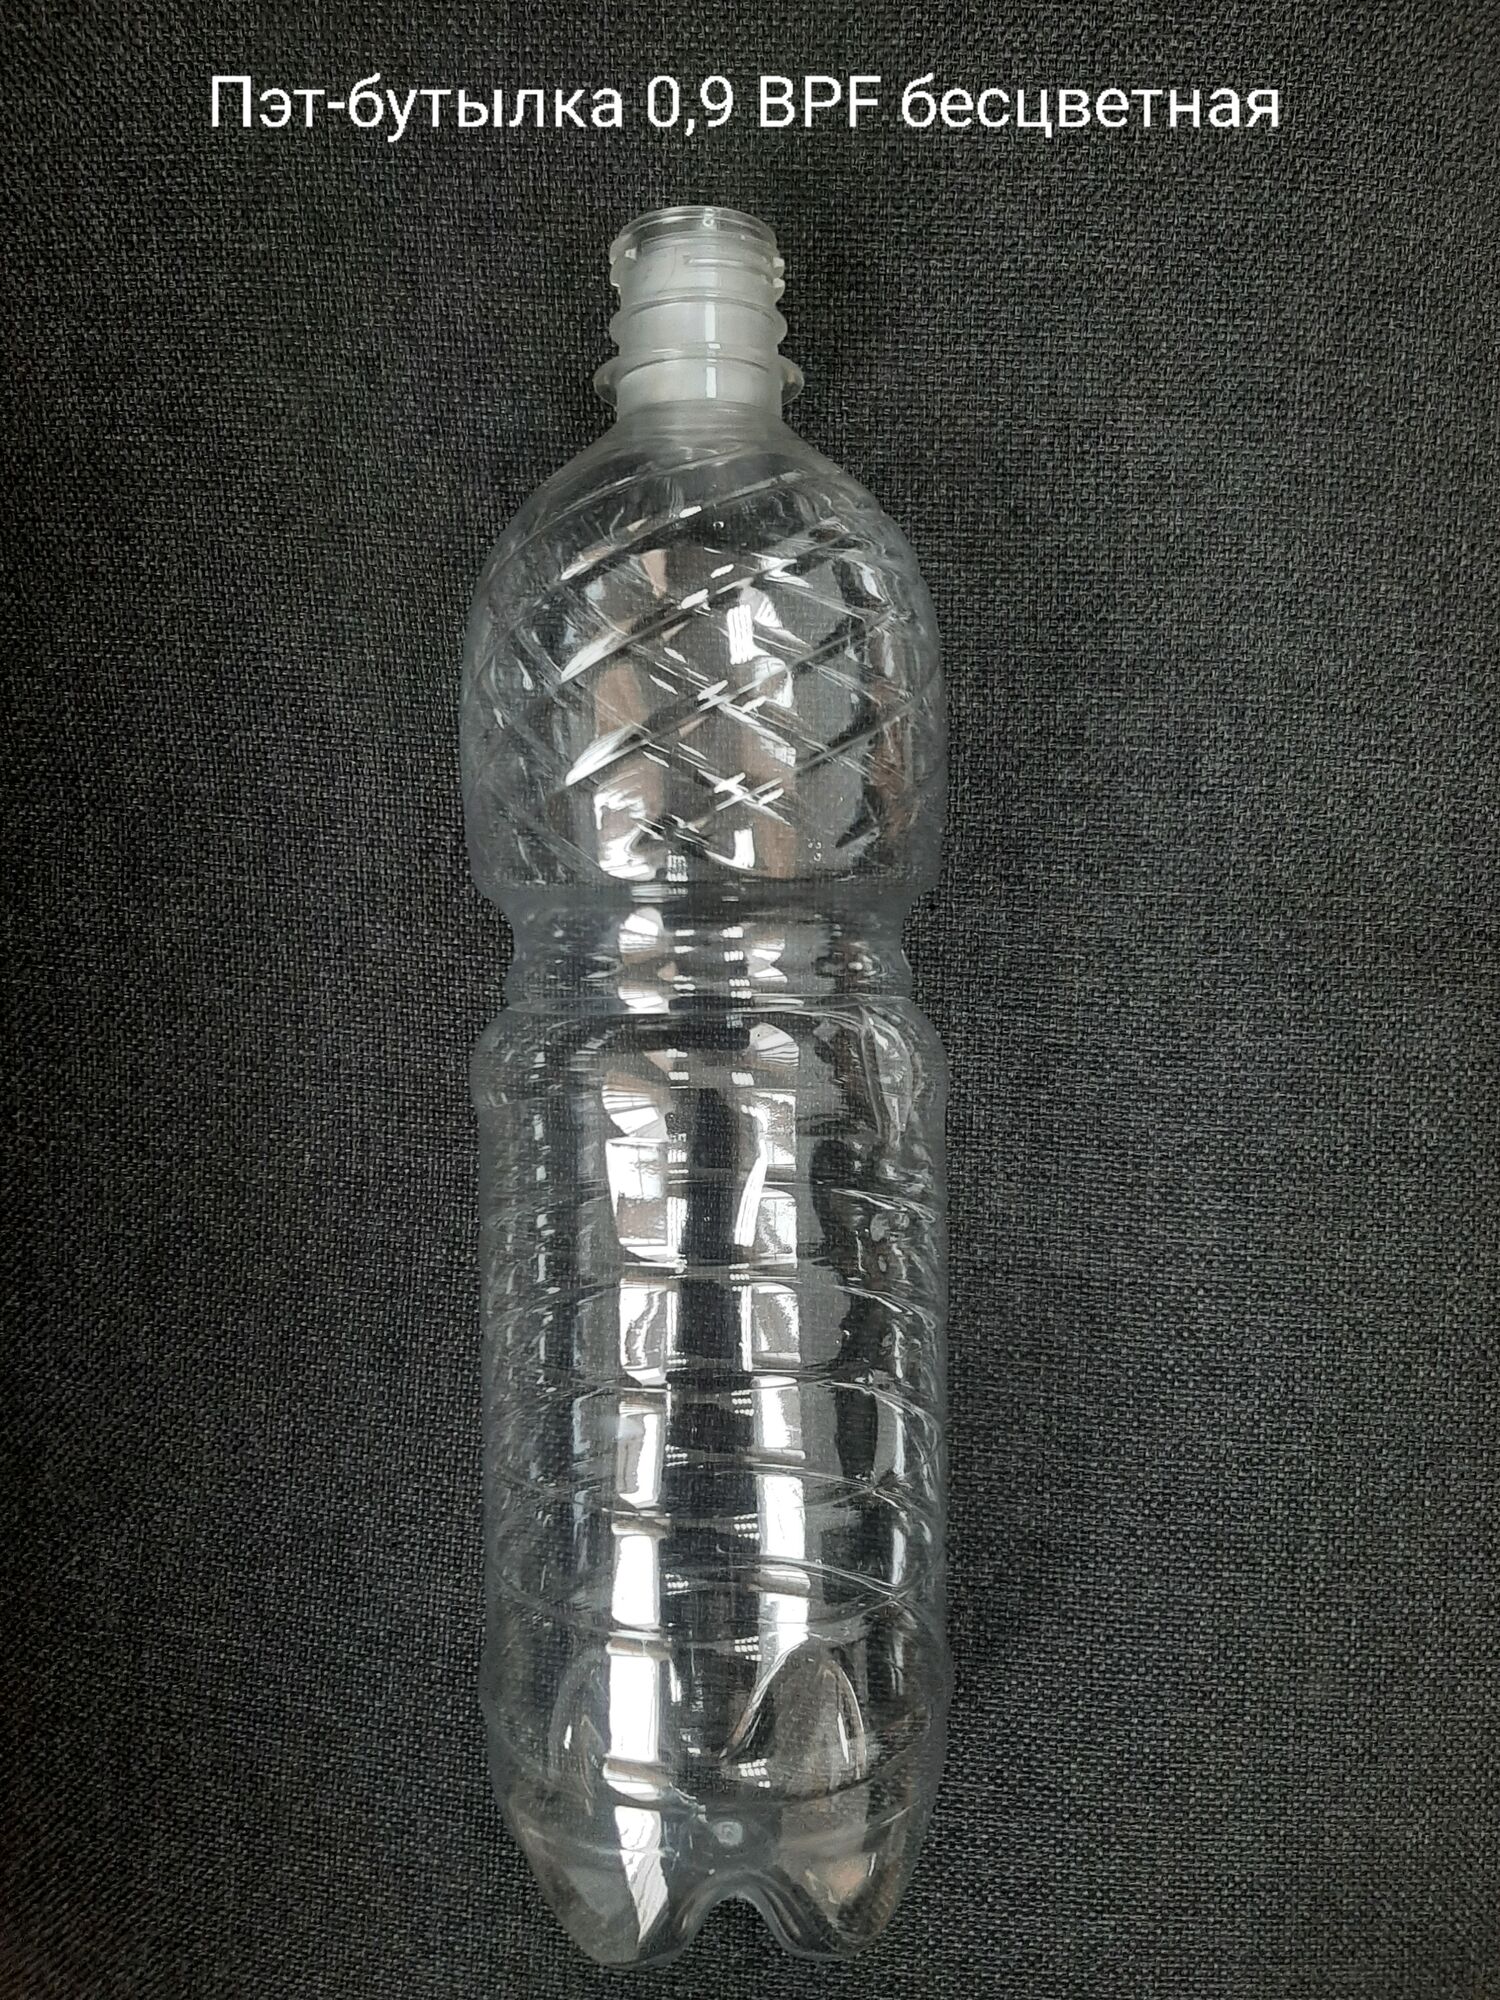 Пэт-бутылка 0,9 BPF, бесцветная (100 шт в упаковке) вес 19,9 гр., 25 гр.